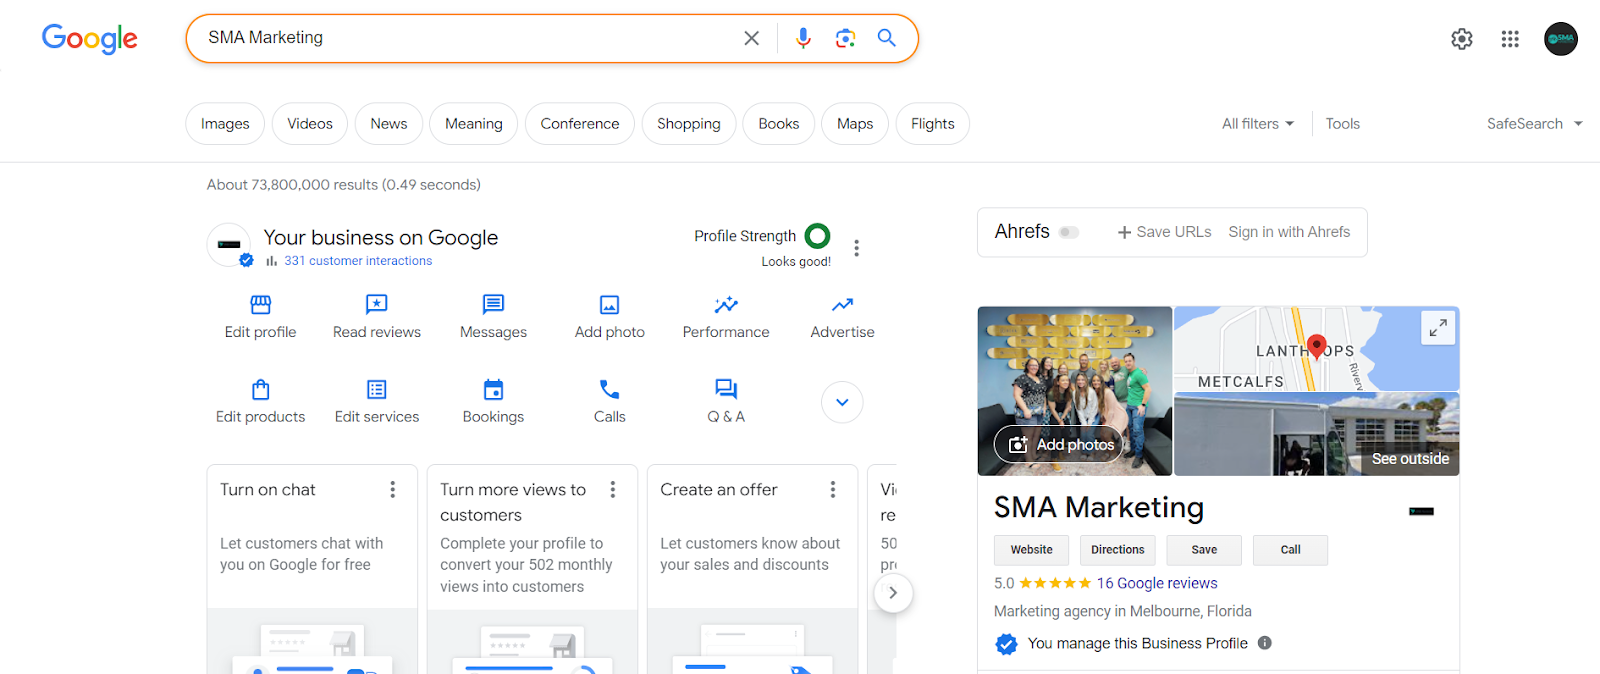 Google reviews for SMA Marketing